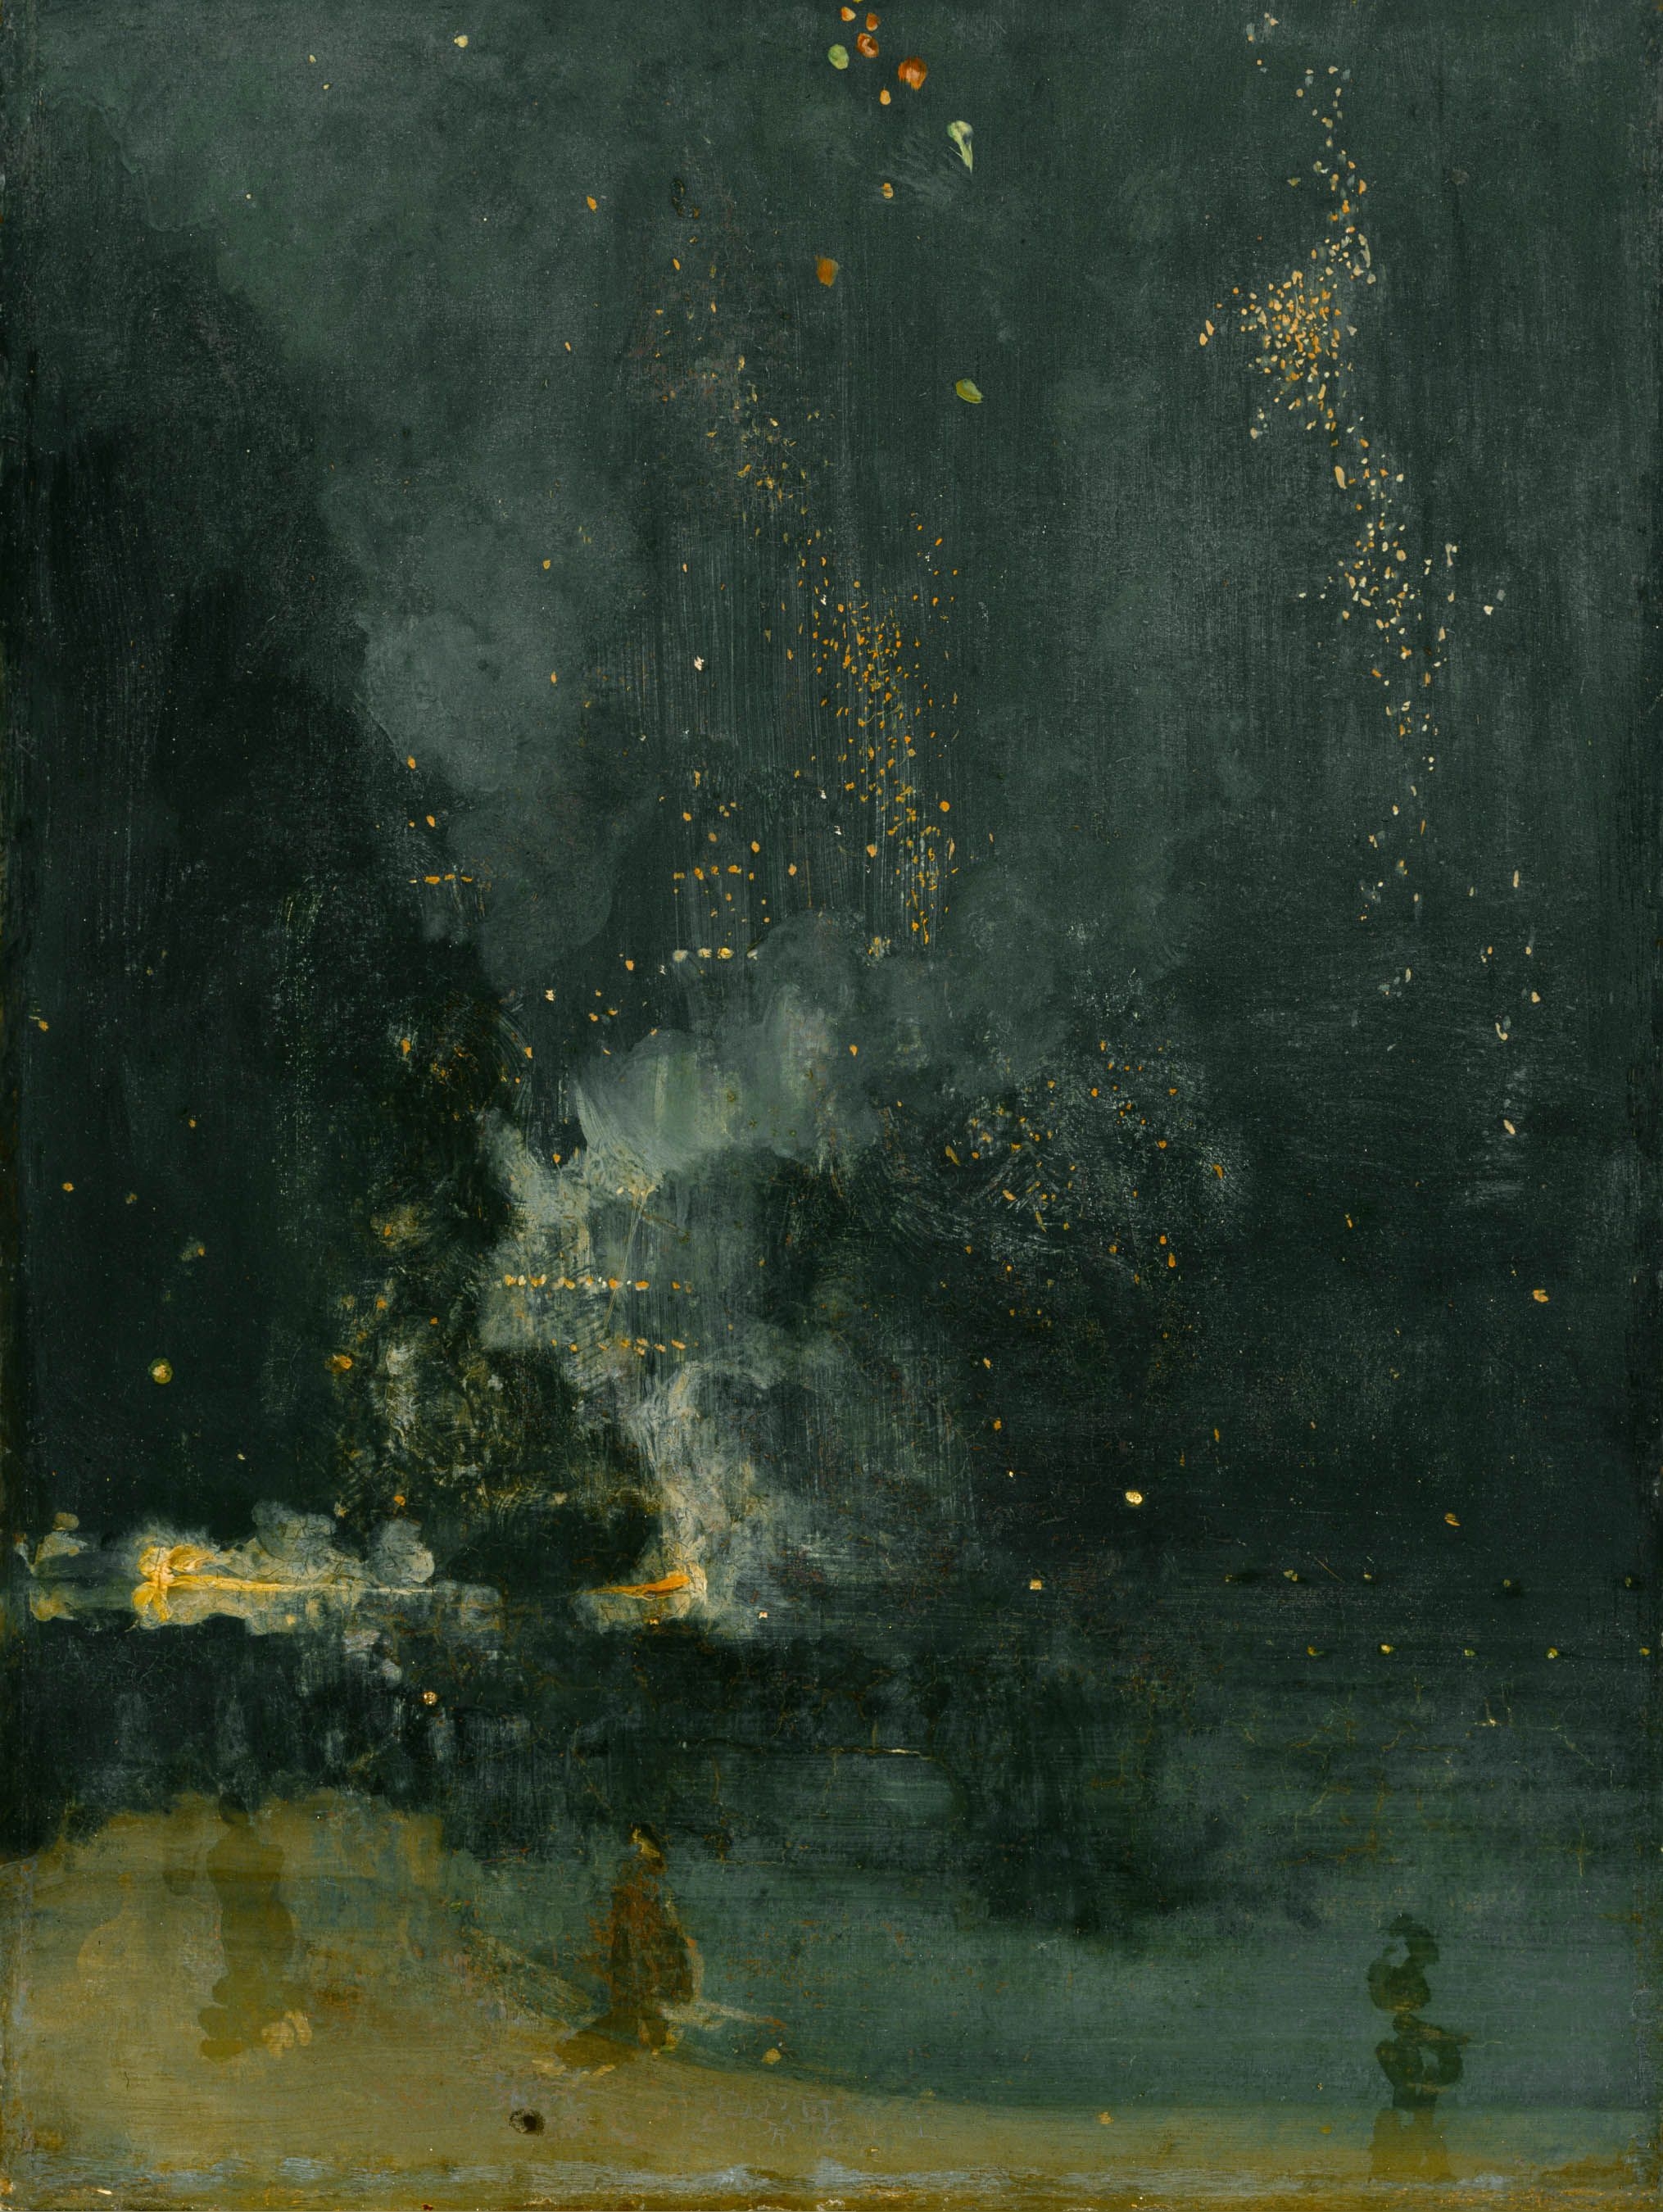 黑金夜曲，坠落的火箭 by 詹姆斯· 艾博特·麦克尼尔·惠斯勒 - 1875 - 60.3 × 46.7 cm 底特律美术馆